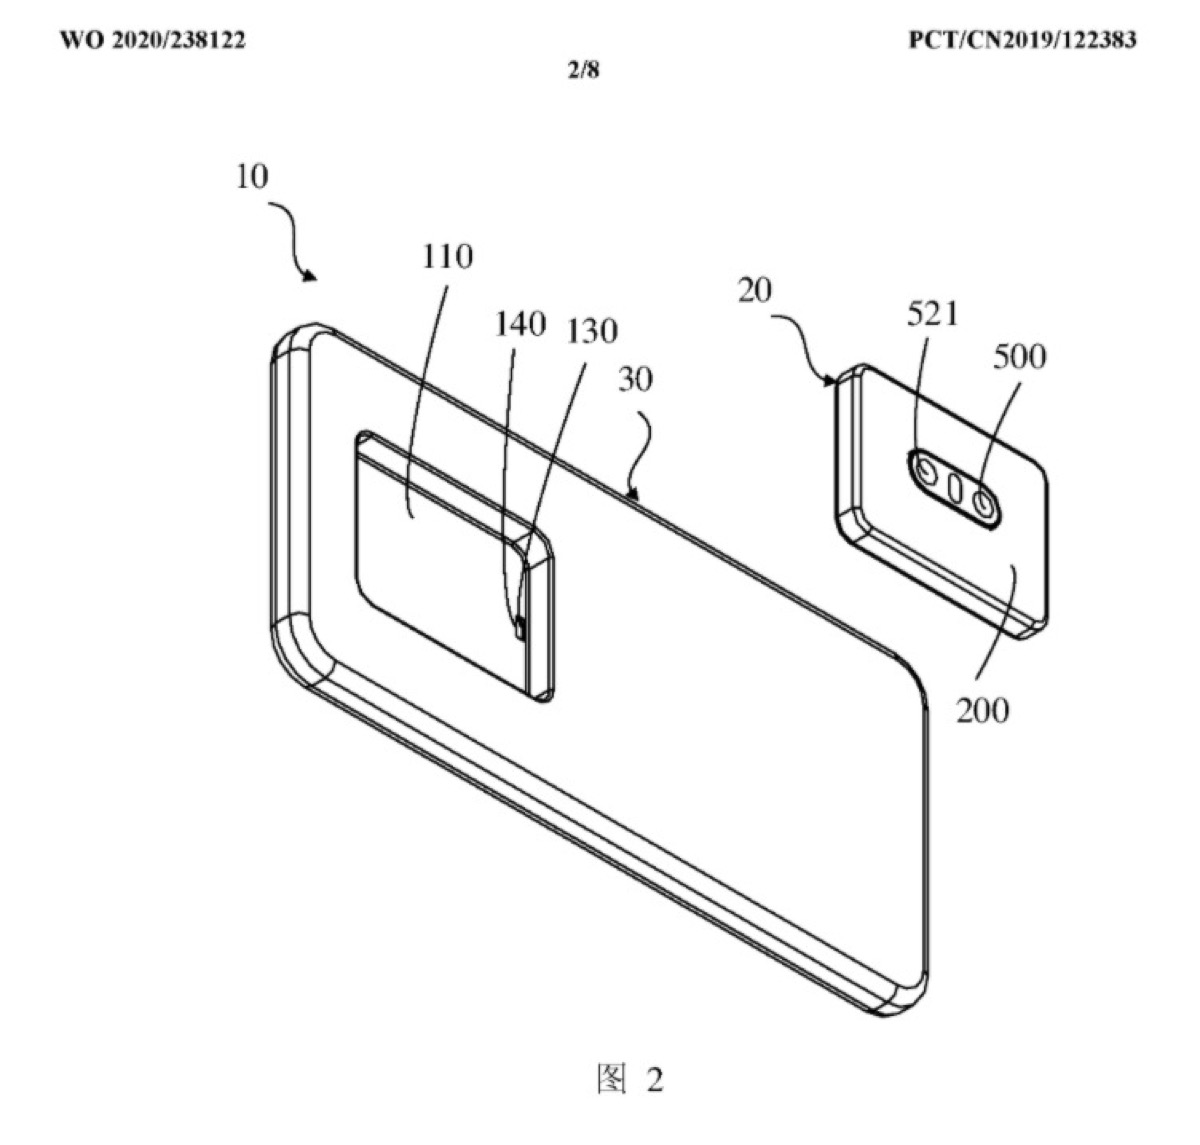 Oppo brevetta lo smartphone con modulo fotocamera rimovibile